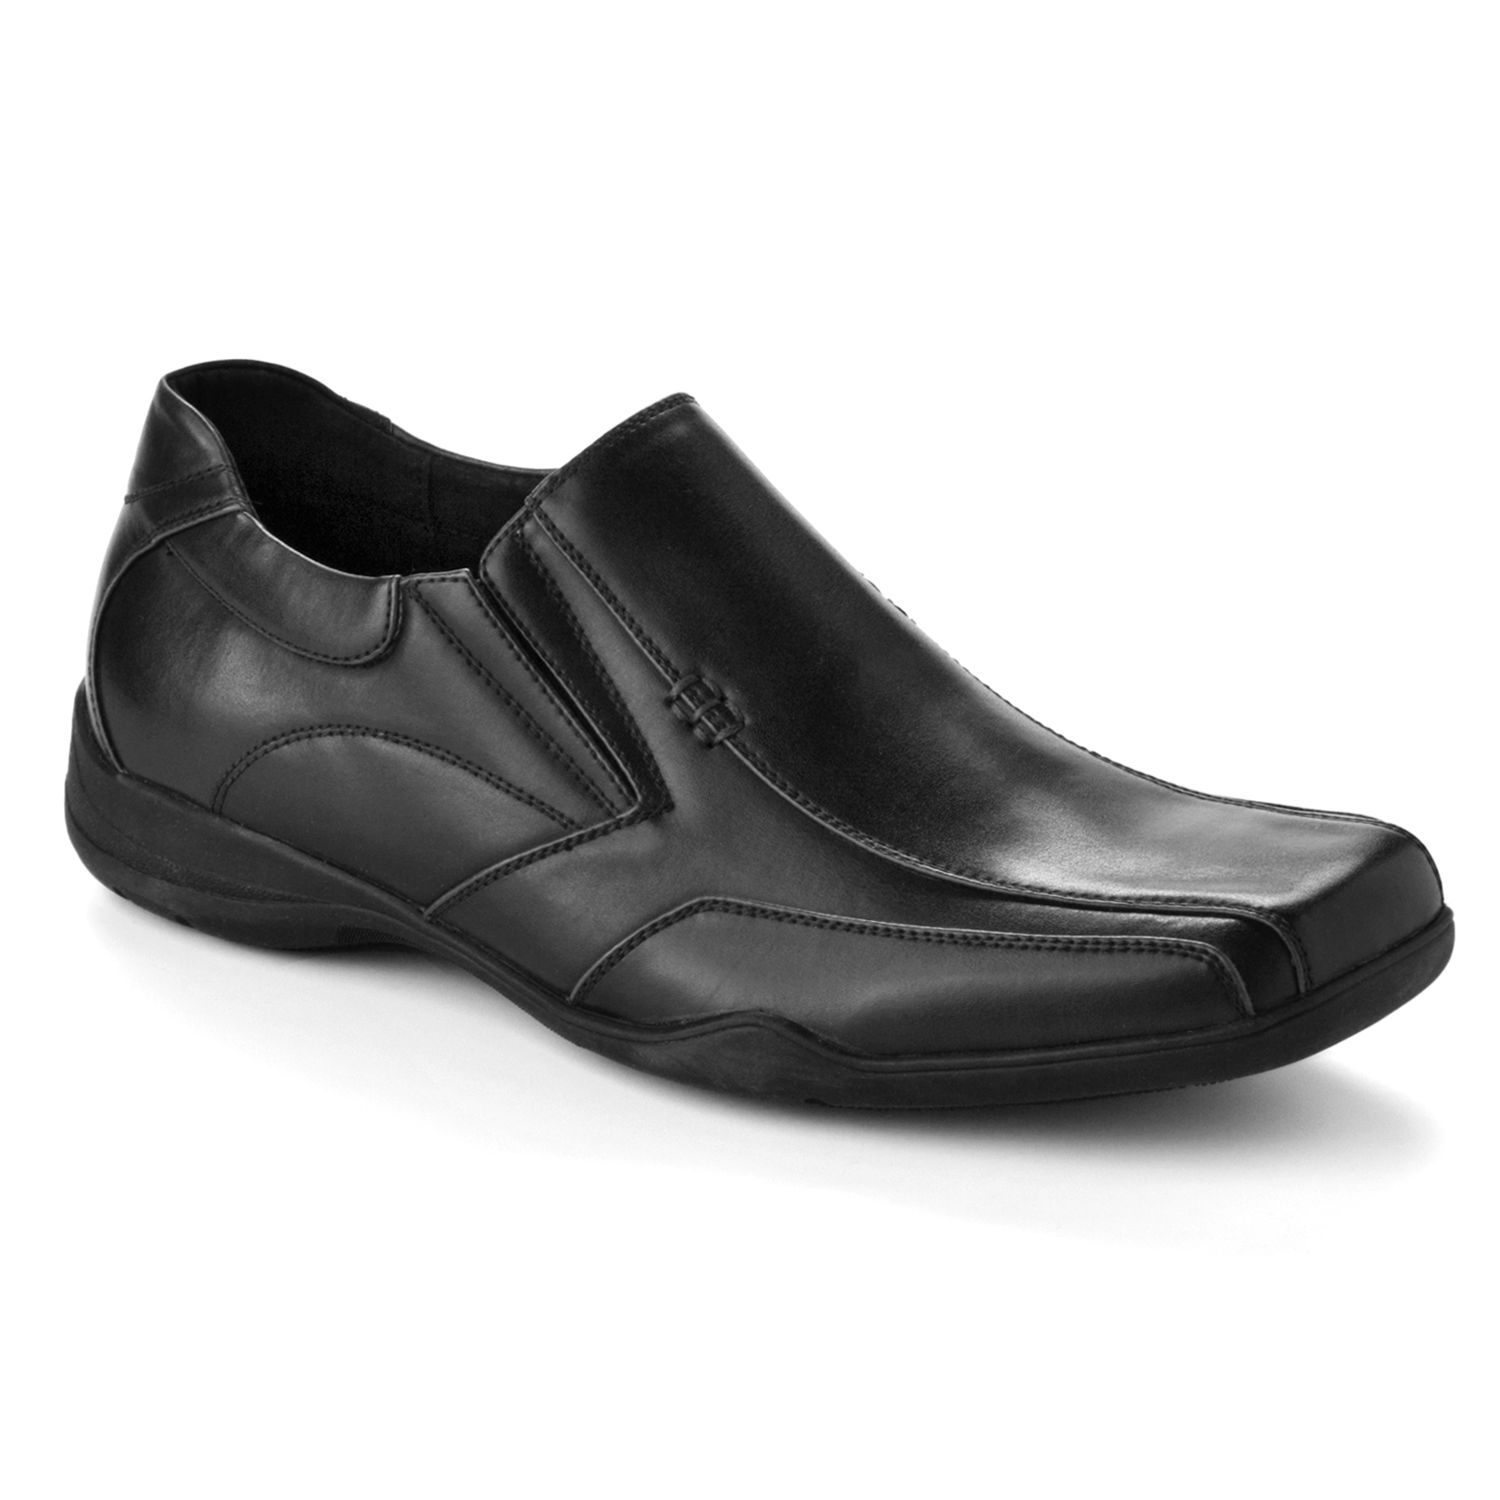 Apt. 9® Men's Slip-On Shoes